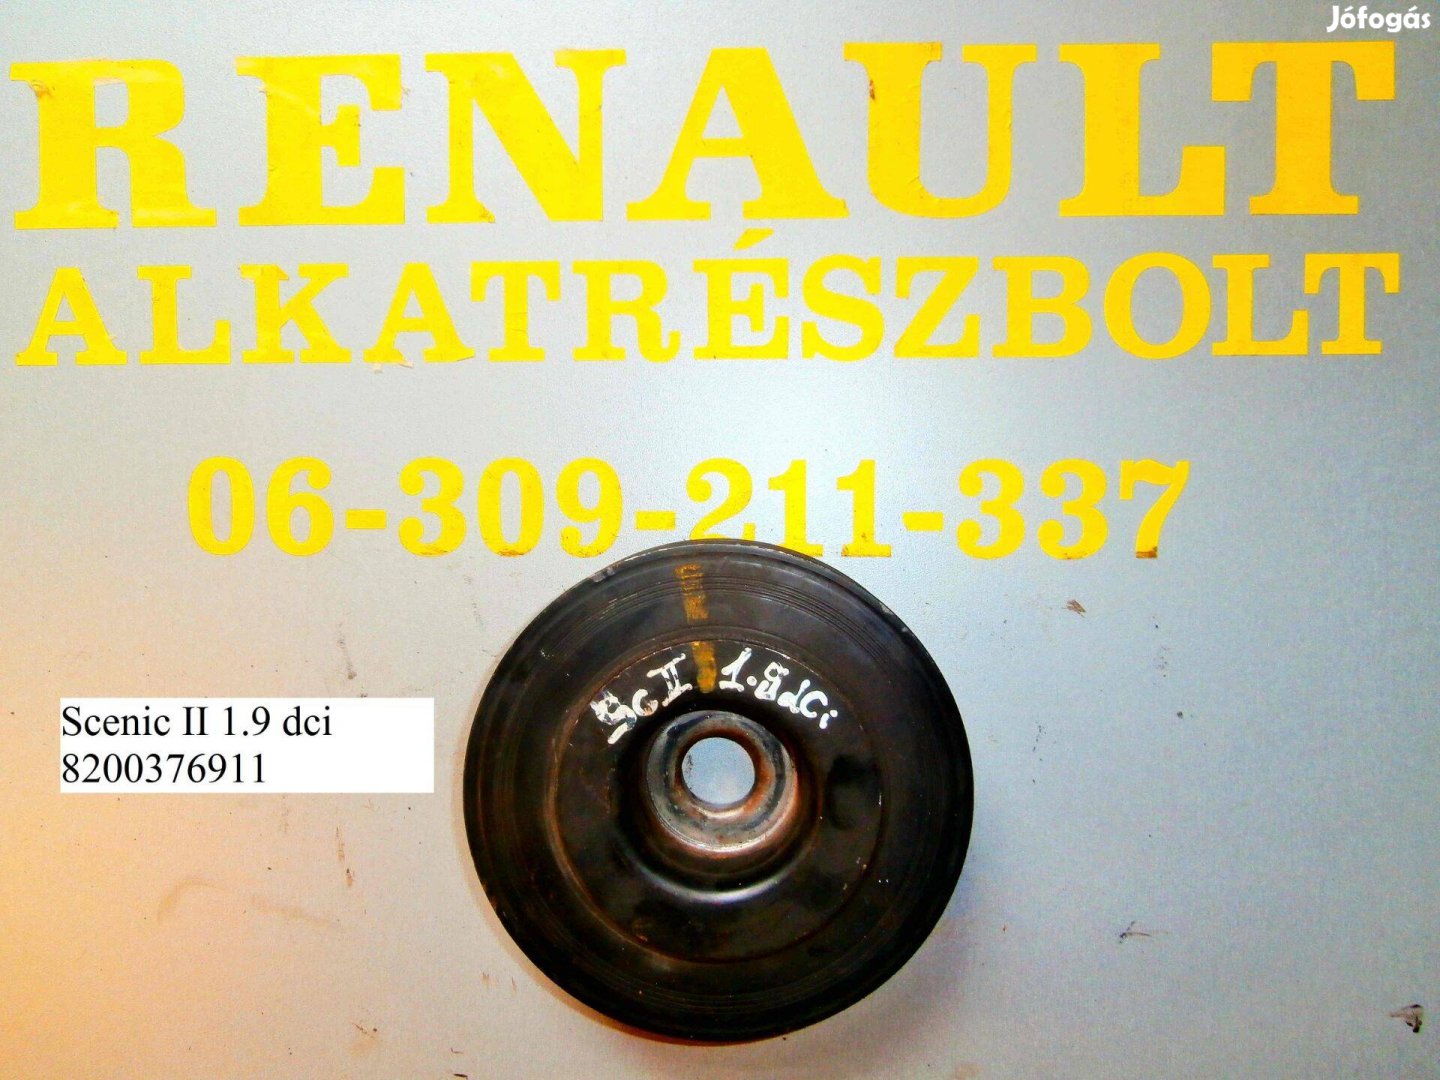 Renault Scenic II 1.9 dci 8200376911 főtengely ékszíjtárcsa